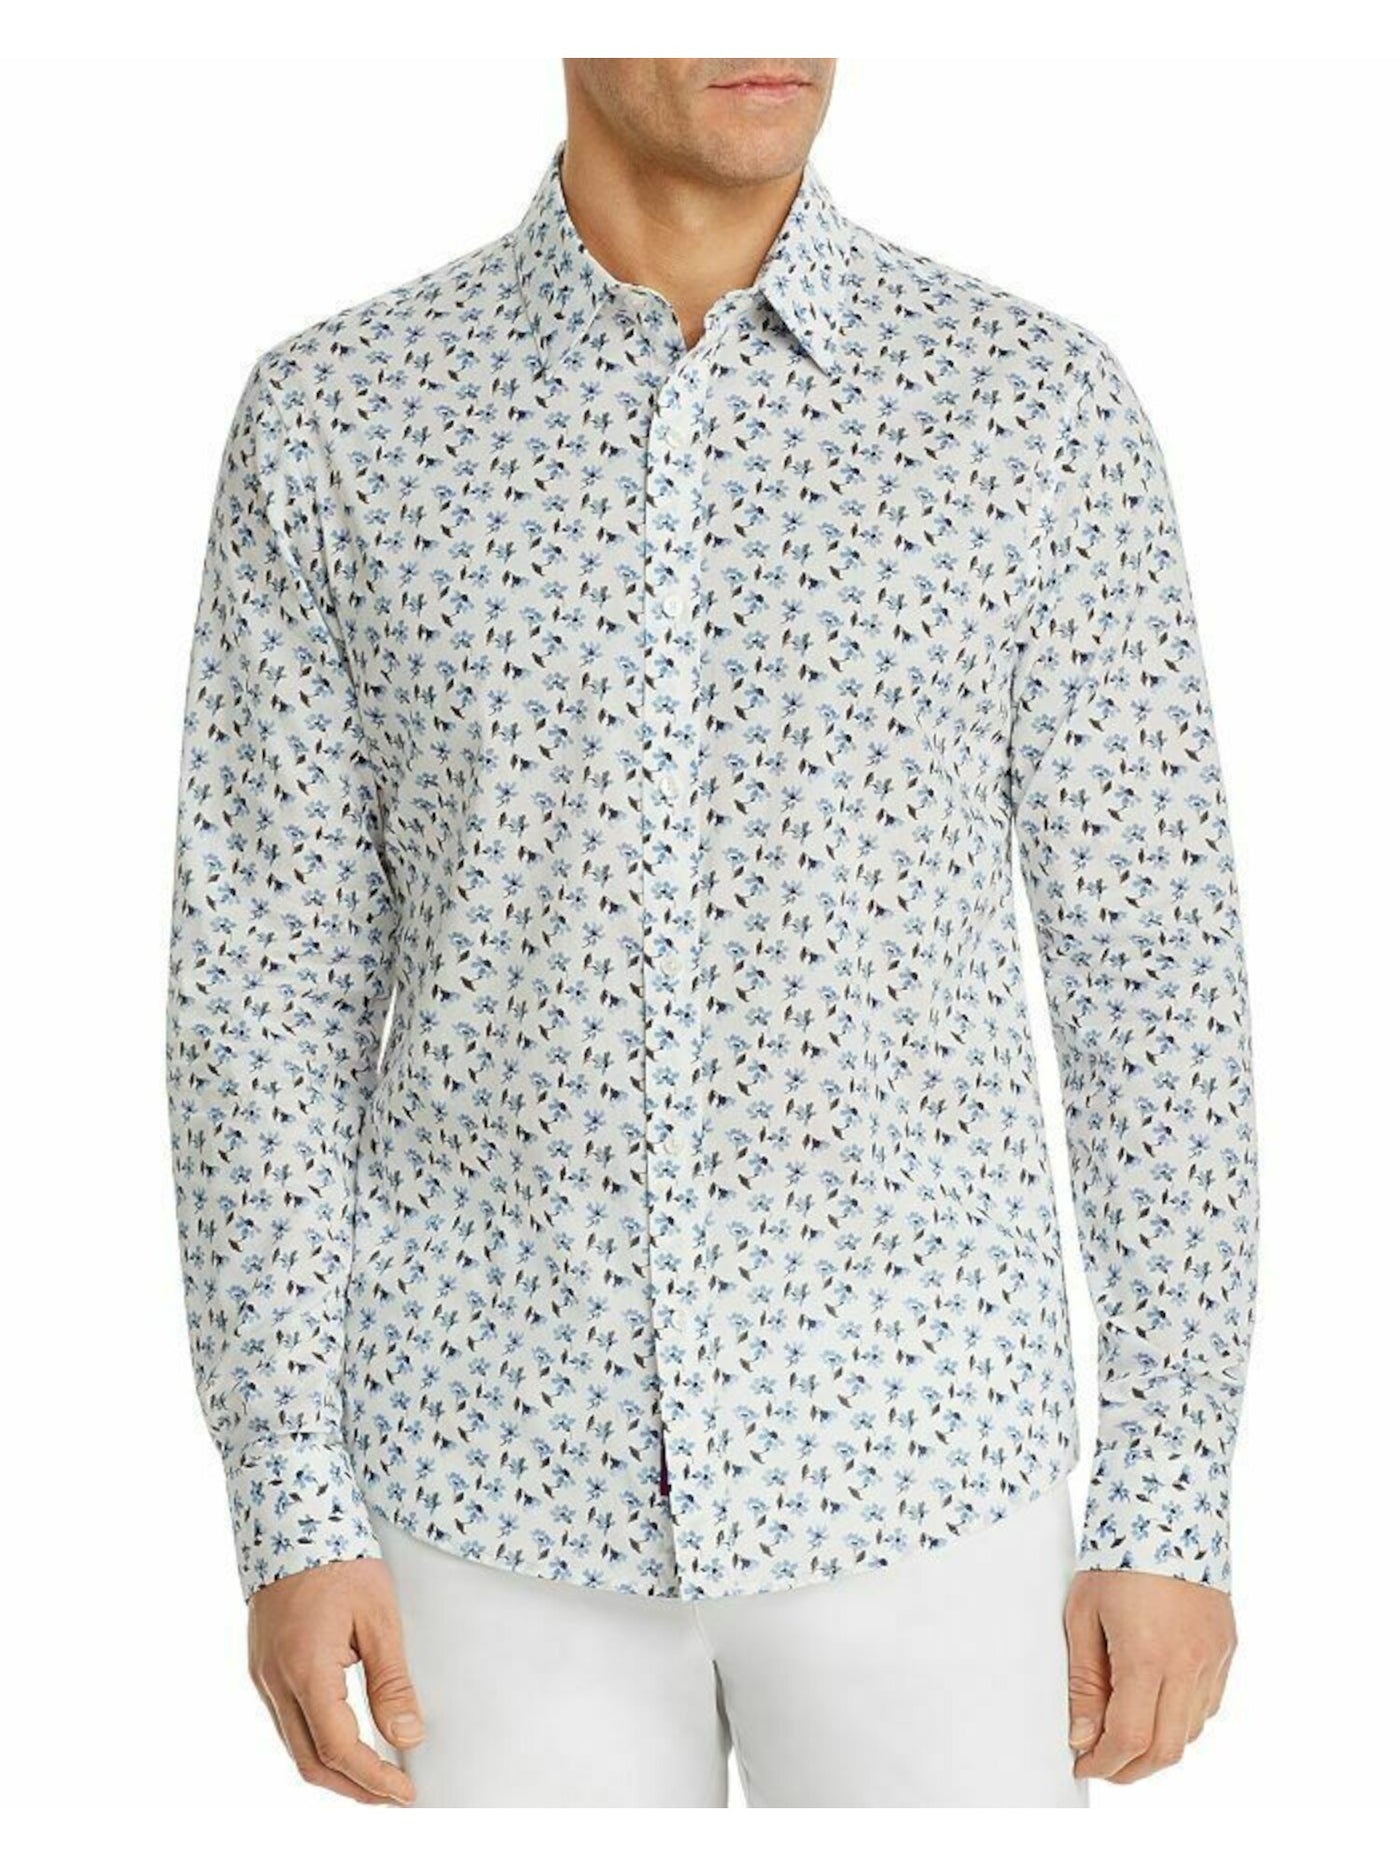 MICHAEL KORS Mens Blue Floral Slim Fit Button Down Cotton Shirt XXL